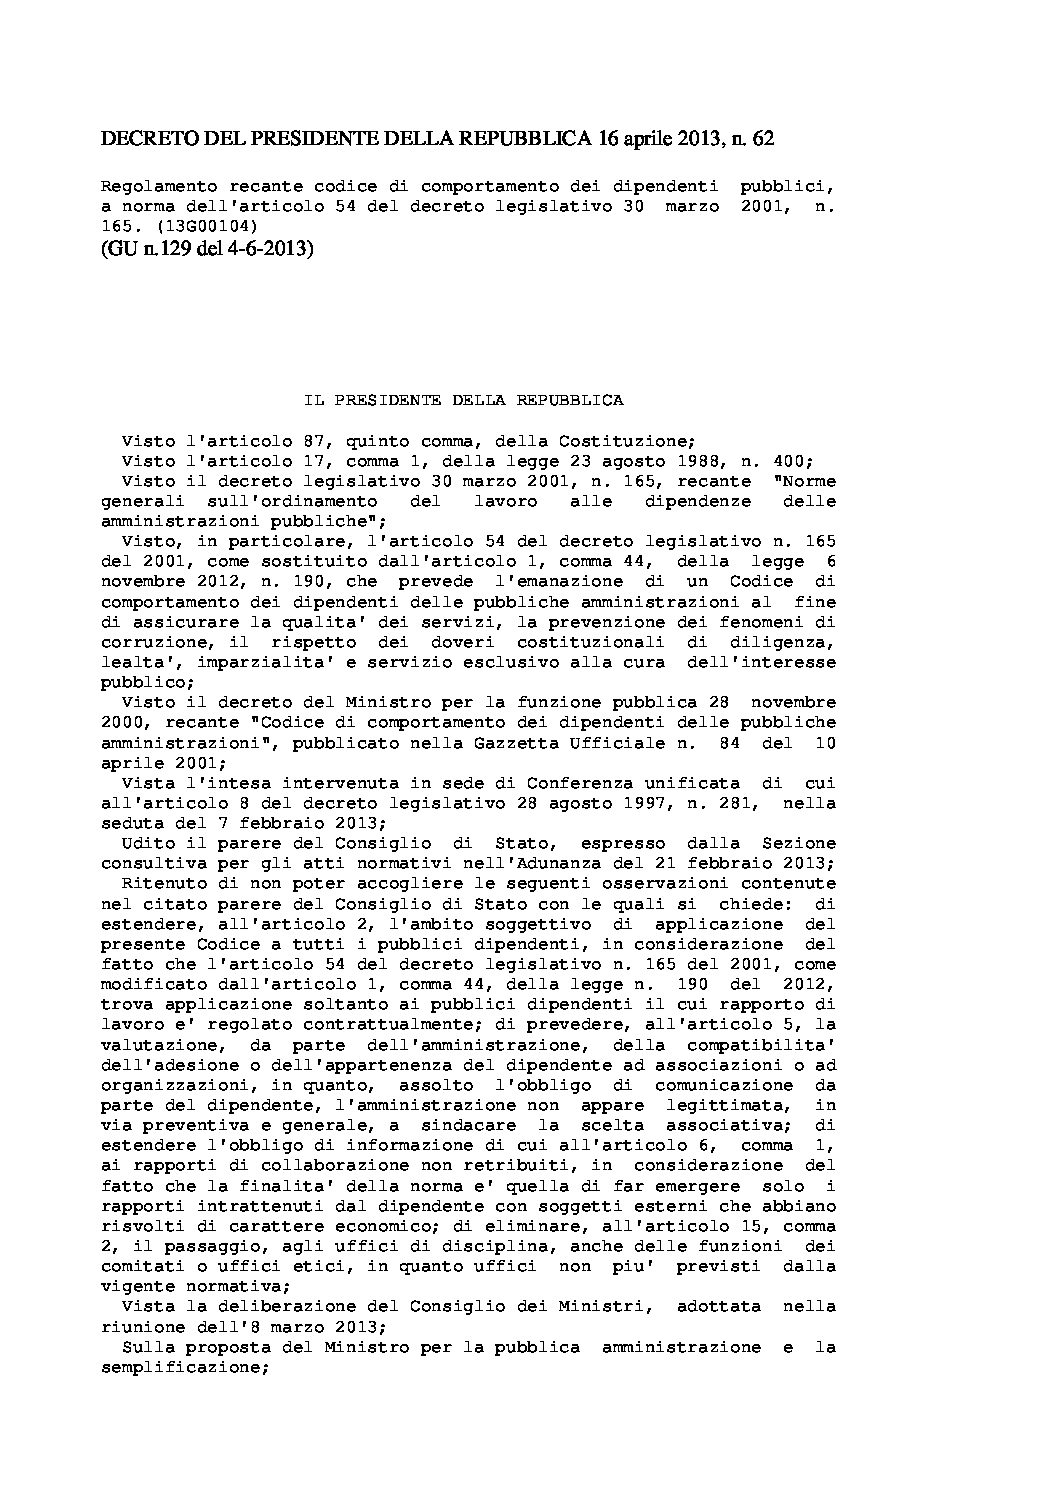 Decreto del Presidente della Repubblica n. 62 del 16 aprile 2013_0